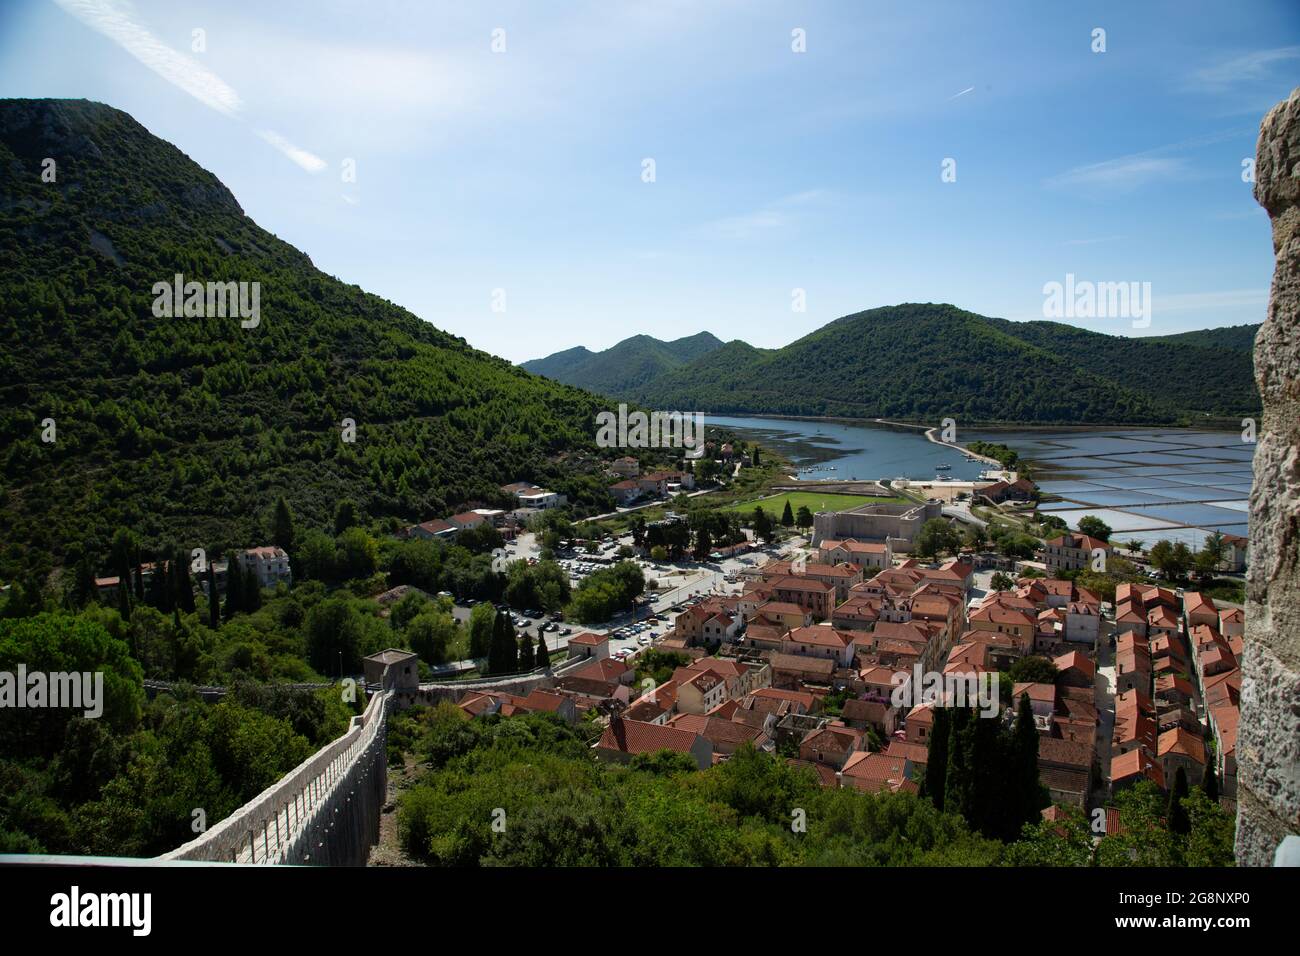 Vistas del pueblo de Stone, pequeño pueblo de Croacia primera linea de defensa contra los Otomanos en la antigüedad con la segunda muralla mas grande Stock Photo